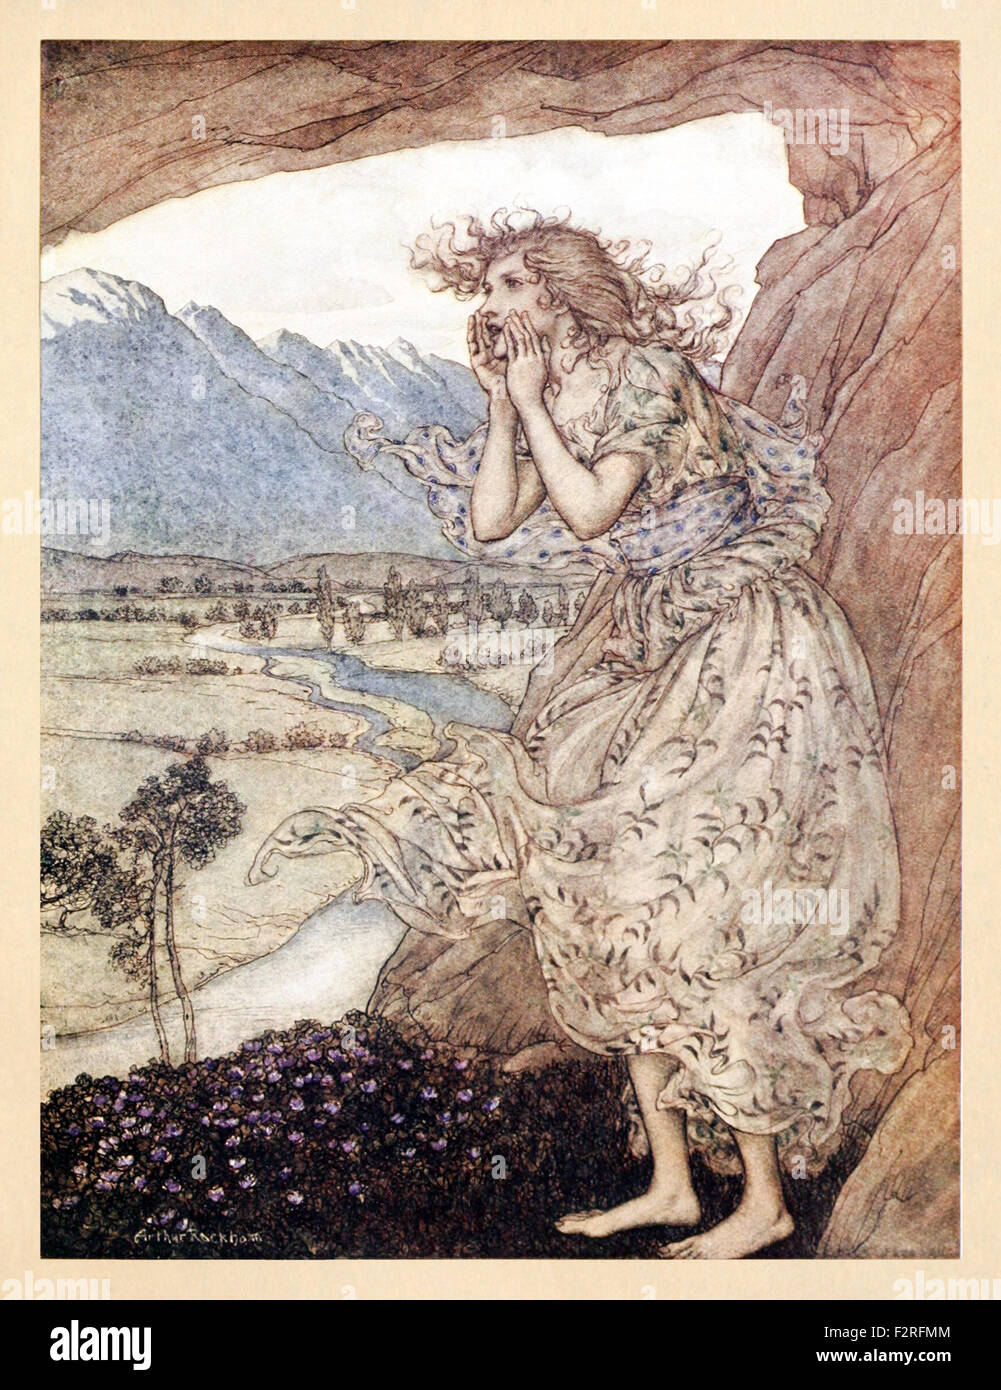 'Sweet Echo' da 'Comus' da John Milton, illustrazione di Arthur Rackham (1867-1939). Vedere la descrizione per maggiori informazioni. Foto Stock